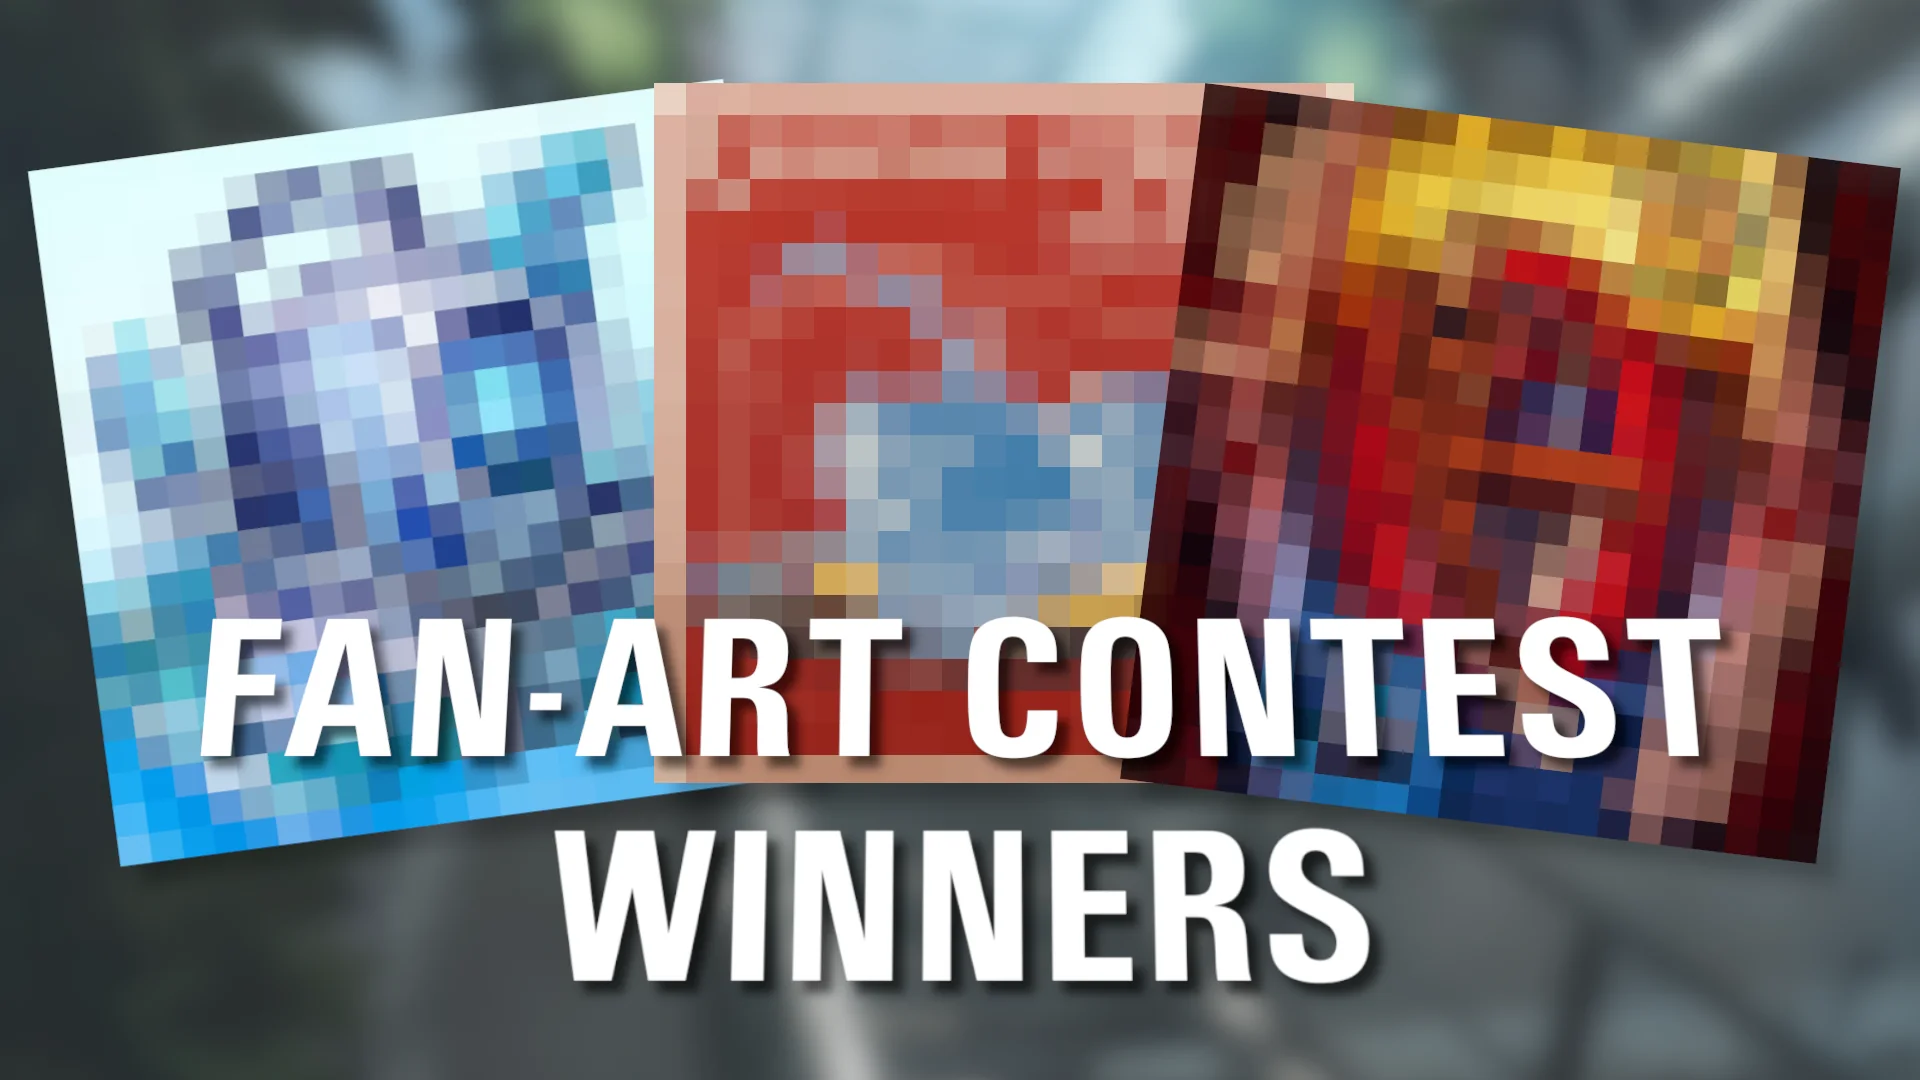 Our Fan-Art Contest Winners!